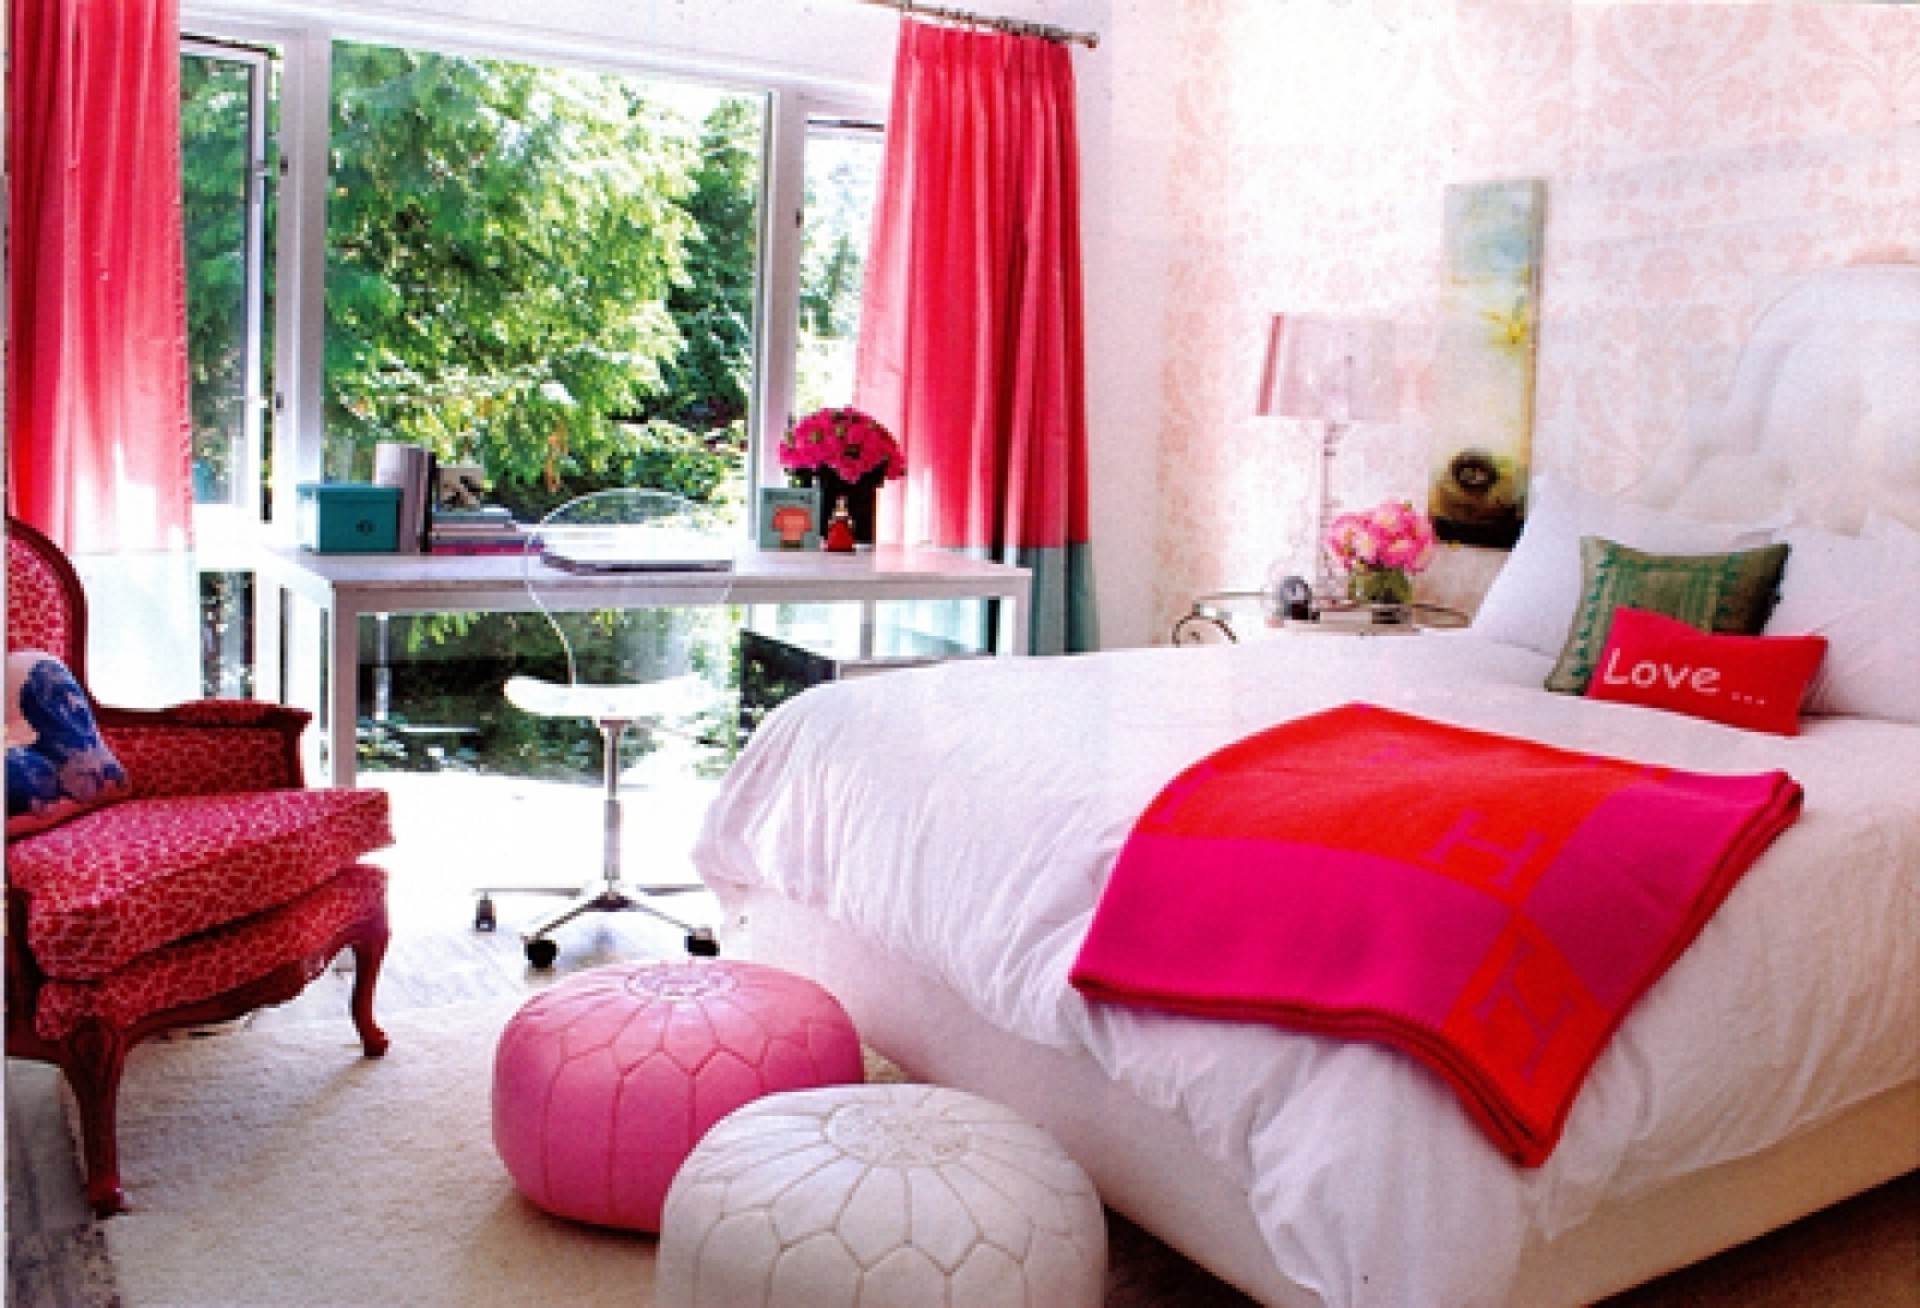 This is nice room. Интерьер женской спальни ярких цветов. Комната для девушки. Комната мечты для женщины. Комната спальня фон яркая.